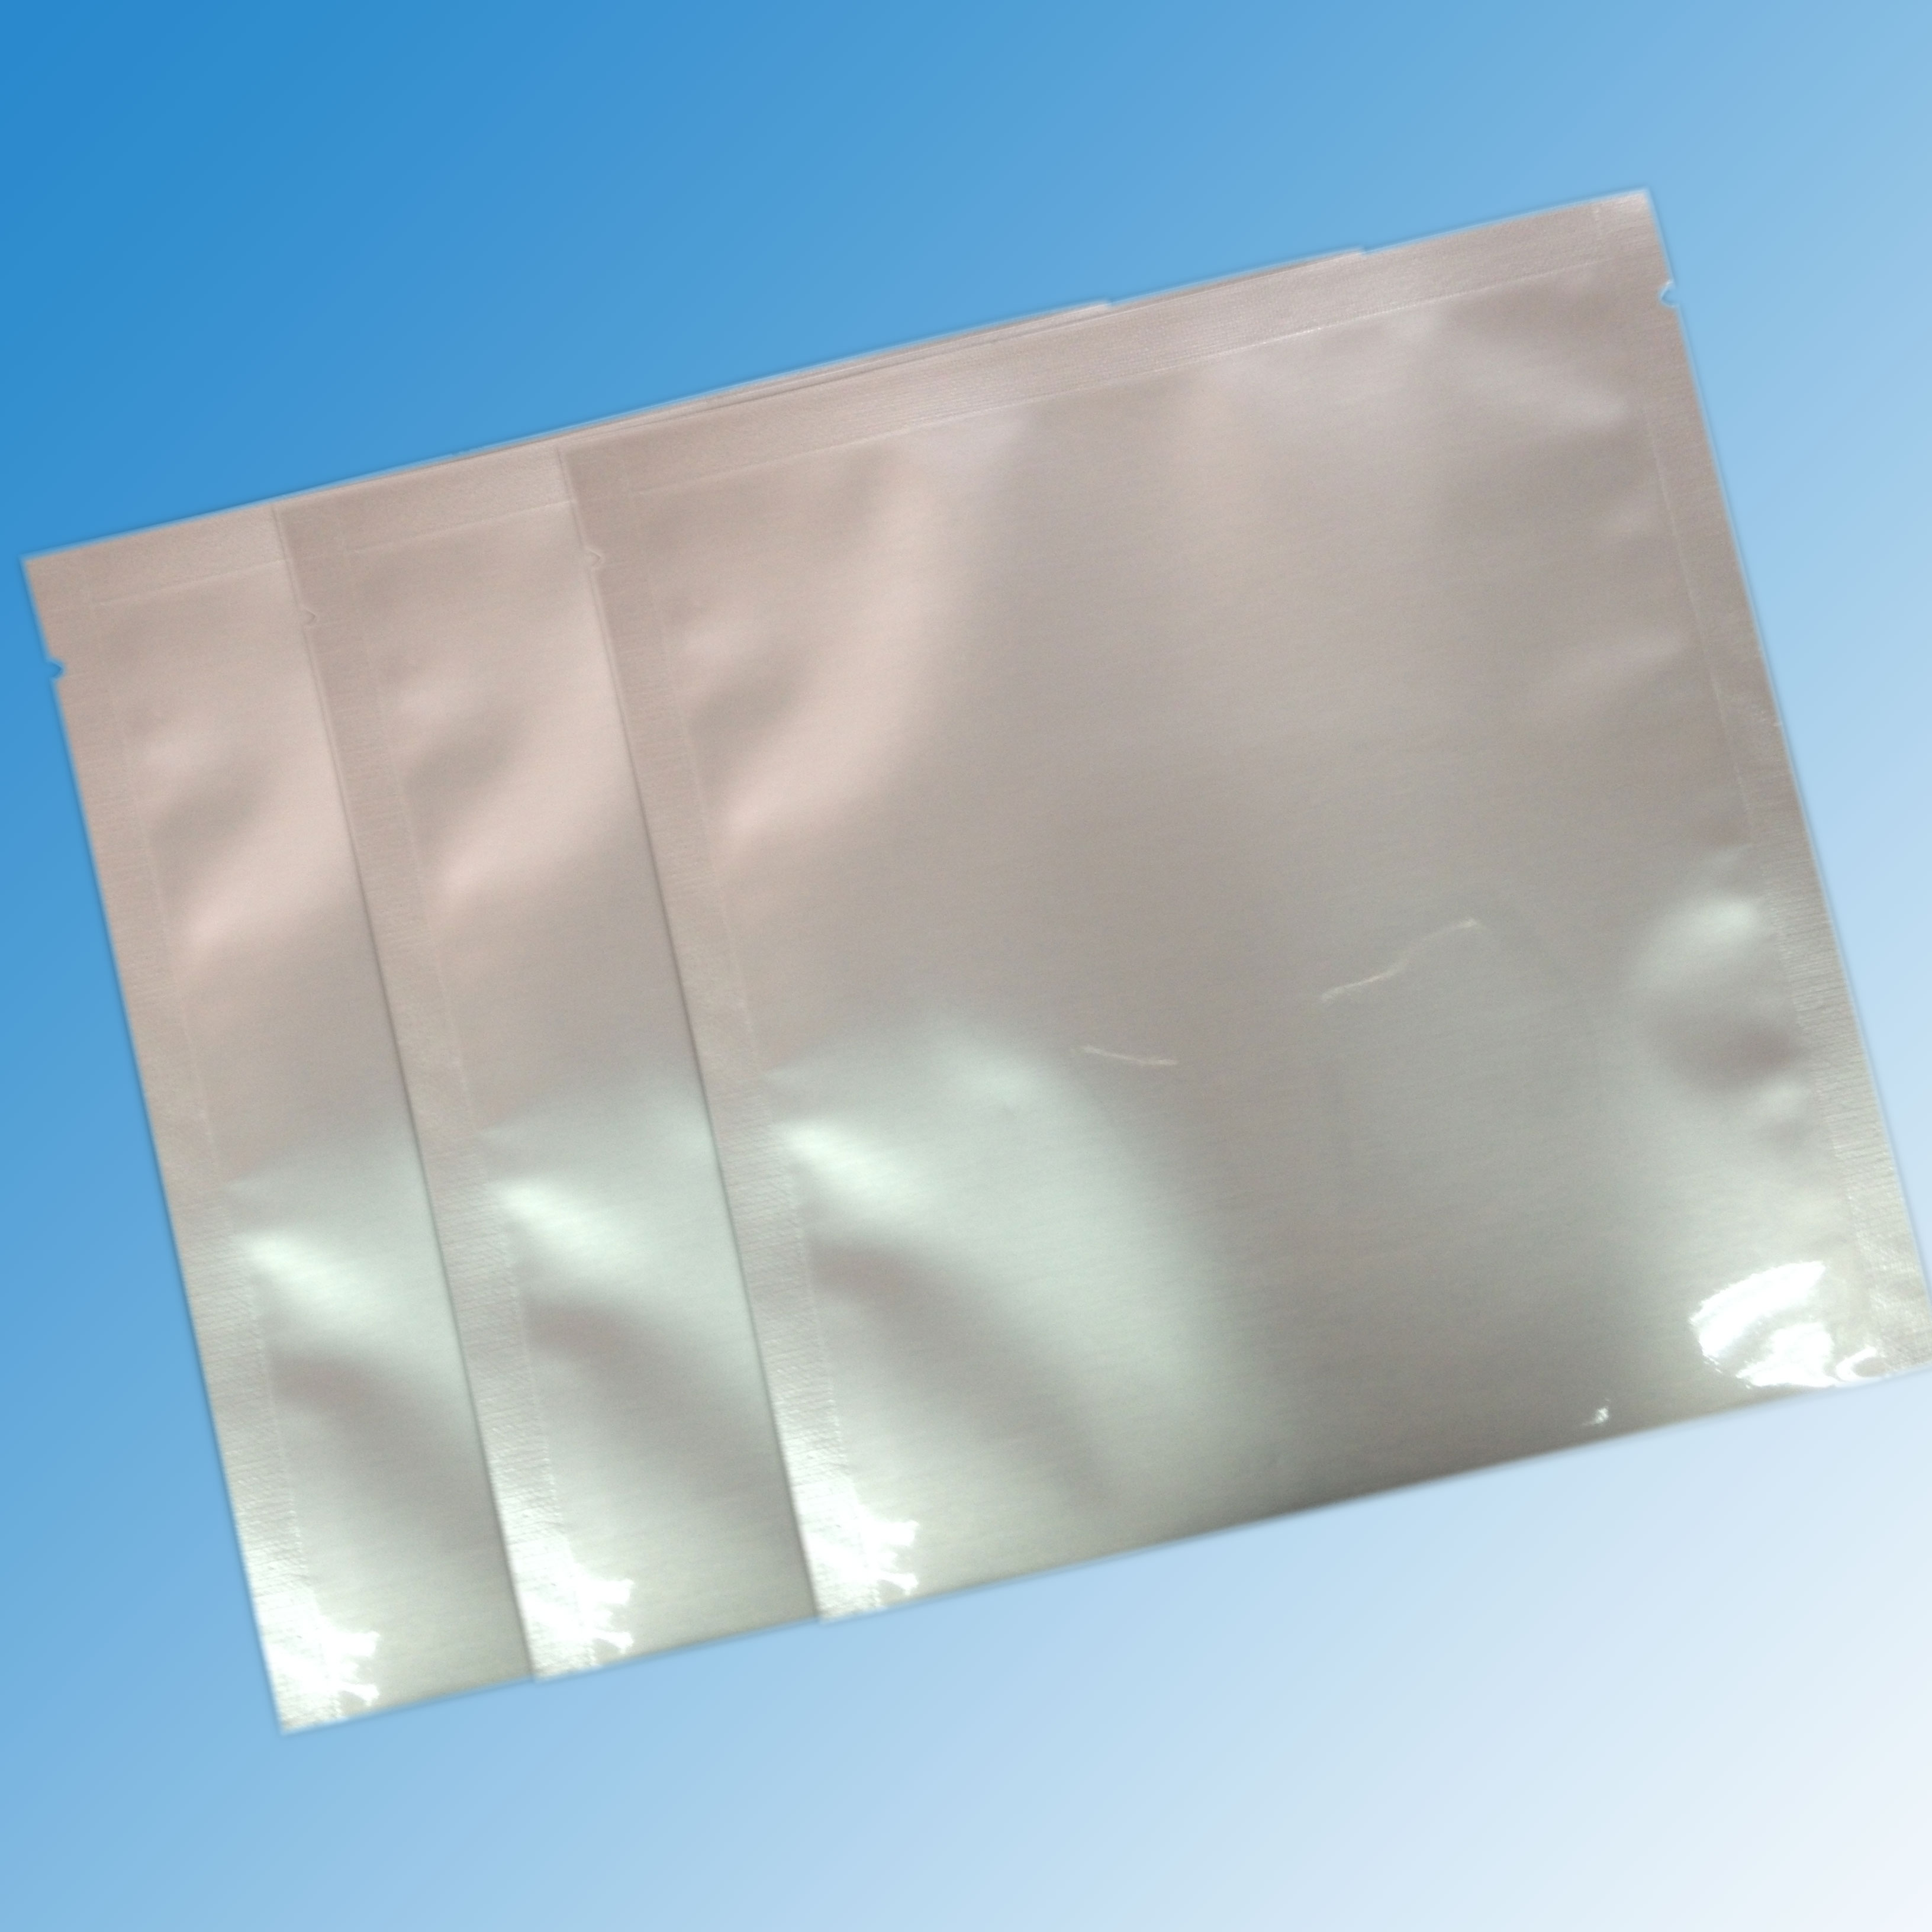 厂家生产供应 铝箔袋 抽真空透明铝箔食品袋 可蒸煮冷冻 护肤品面膜袋